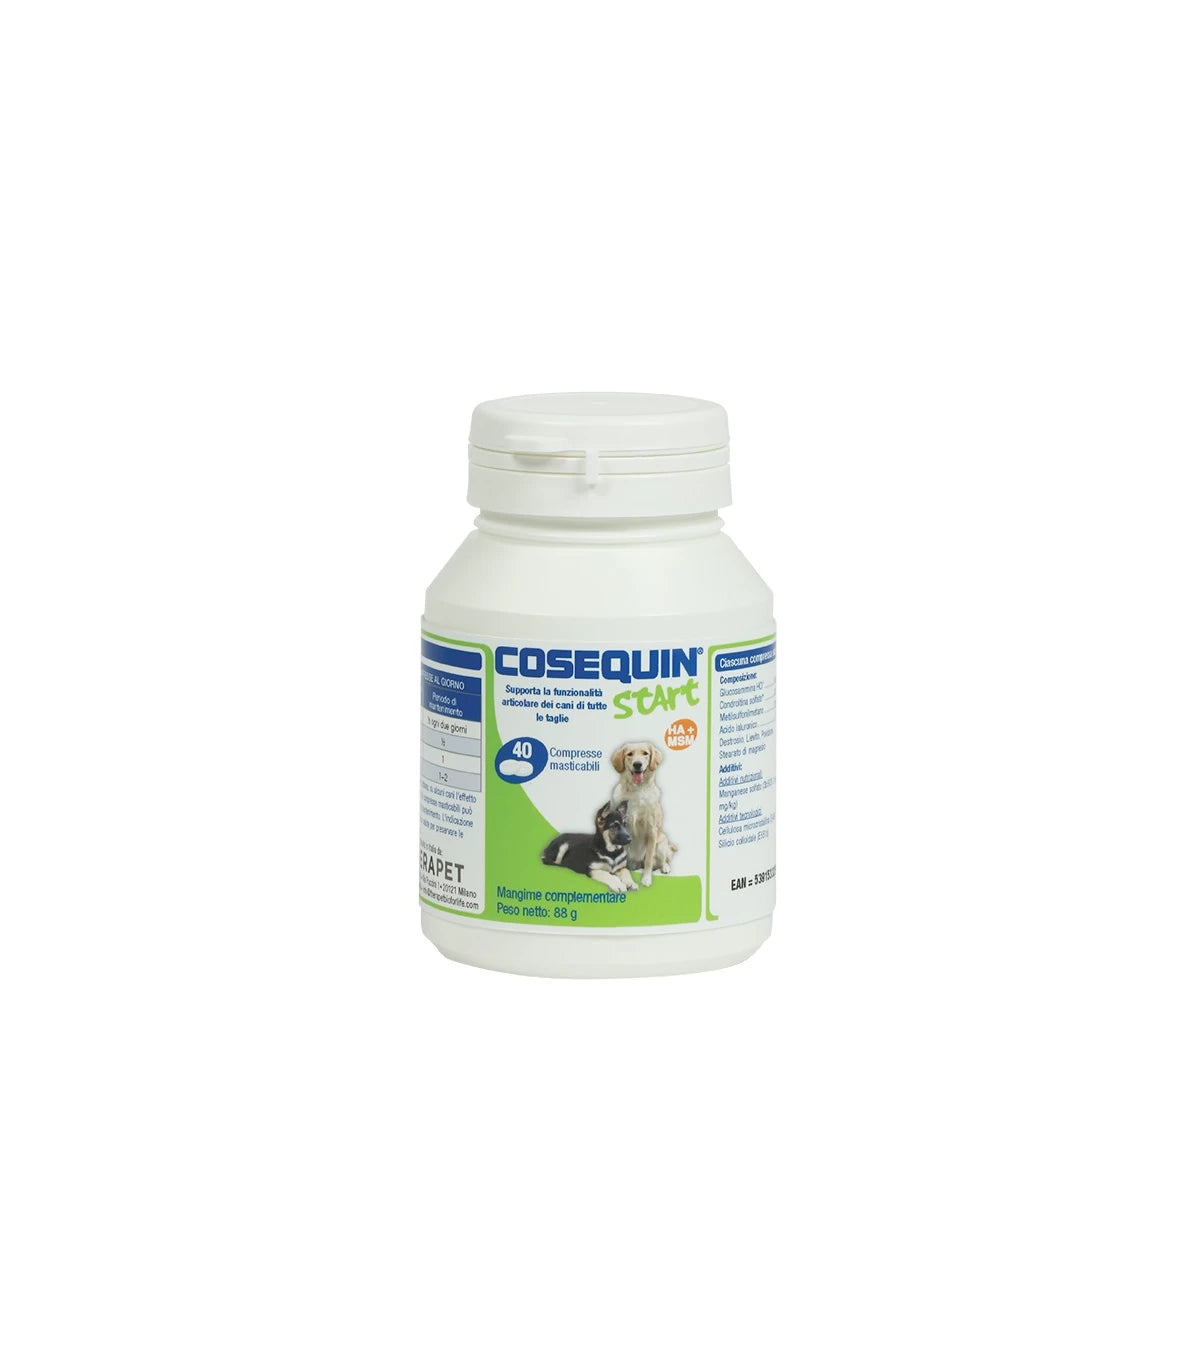 COSEQUIN START (40 cpr) – Per le articolazioni di cuccioli e cani adulti